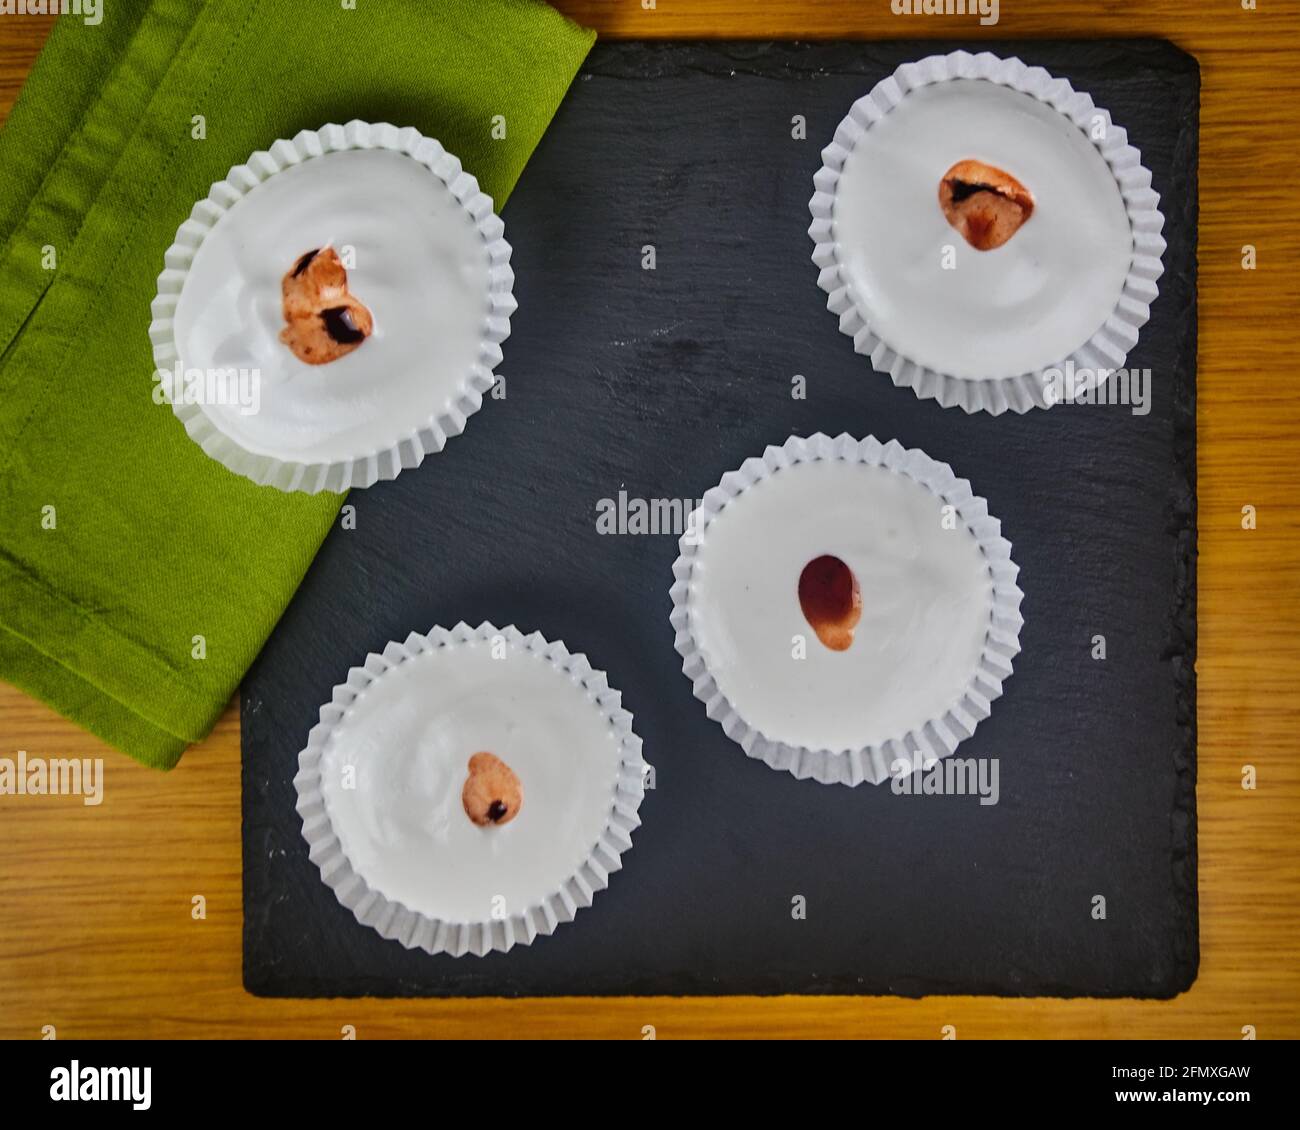 Mehrere rohe französische Dessert-Meringues mit Erdbeersauce, verziert mit einer Serviette auf einem Holztisch und einem schwarzen Schieferbrett. Draufsicht Stockfoto